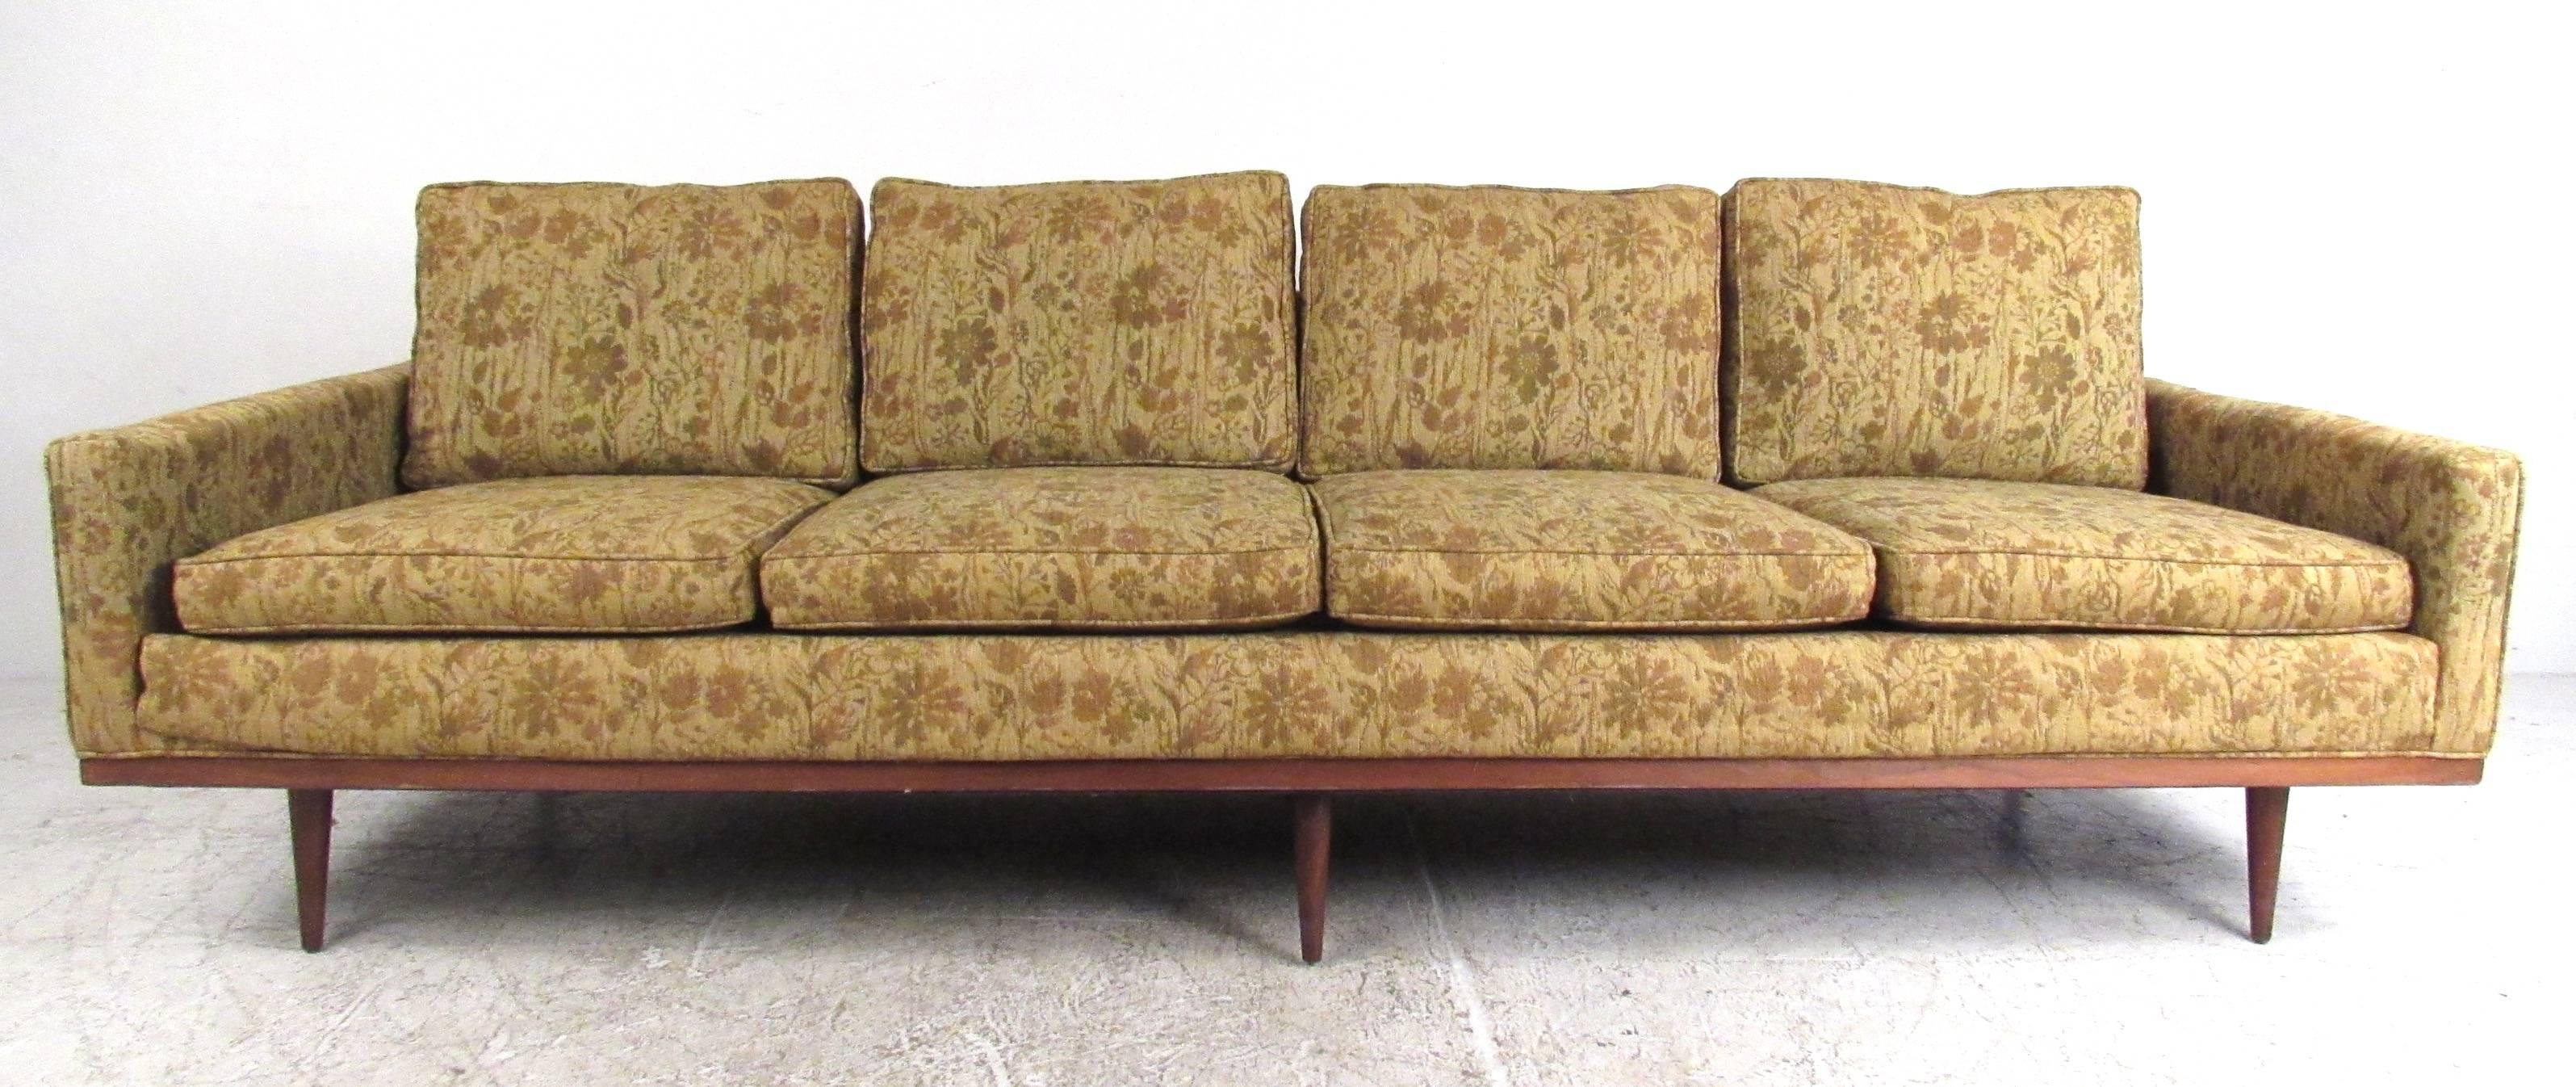 Dieses exquisite Vintage-Sofa zeichnet sich durch ein atemberaubendes Design mit vier Sitzen und sechs Beinen aus, die zusätzlichen Halt bieten. Die Holzverkleidung, die spitz zulaufenden Beine und der klassische Stil von Milo Baughman verleihen